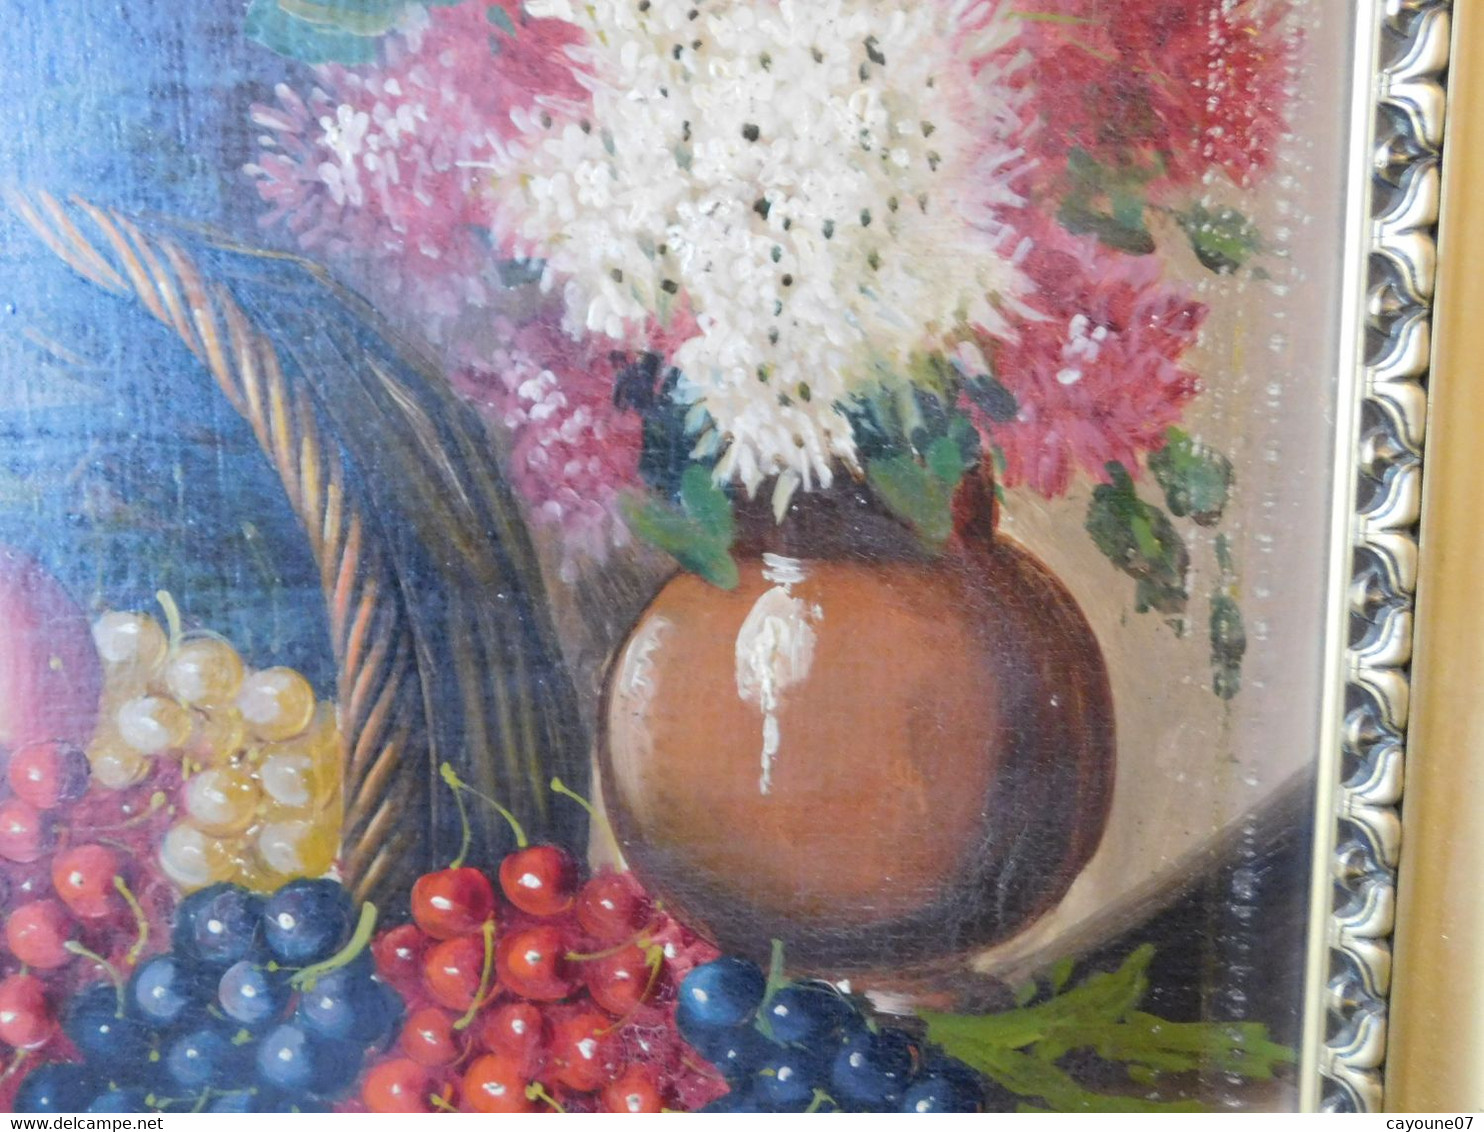 MORTELAZ (XIX-XXème) huile sur toile grand format nature morte aux raisins cerise pêche et bouquet fleuri